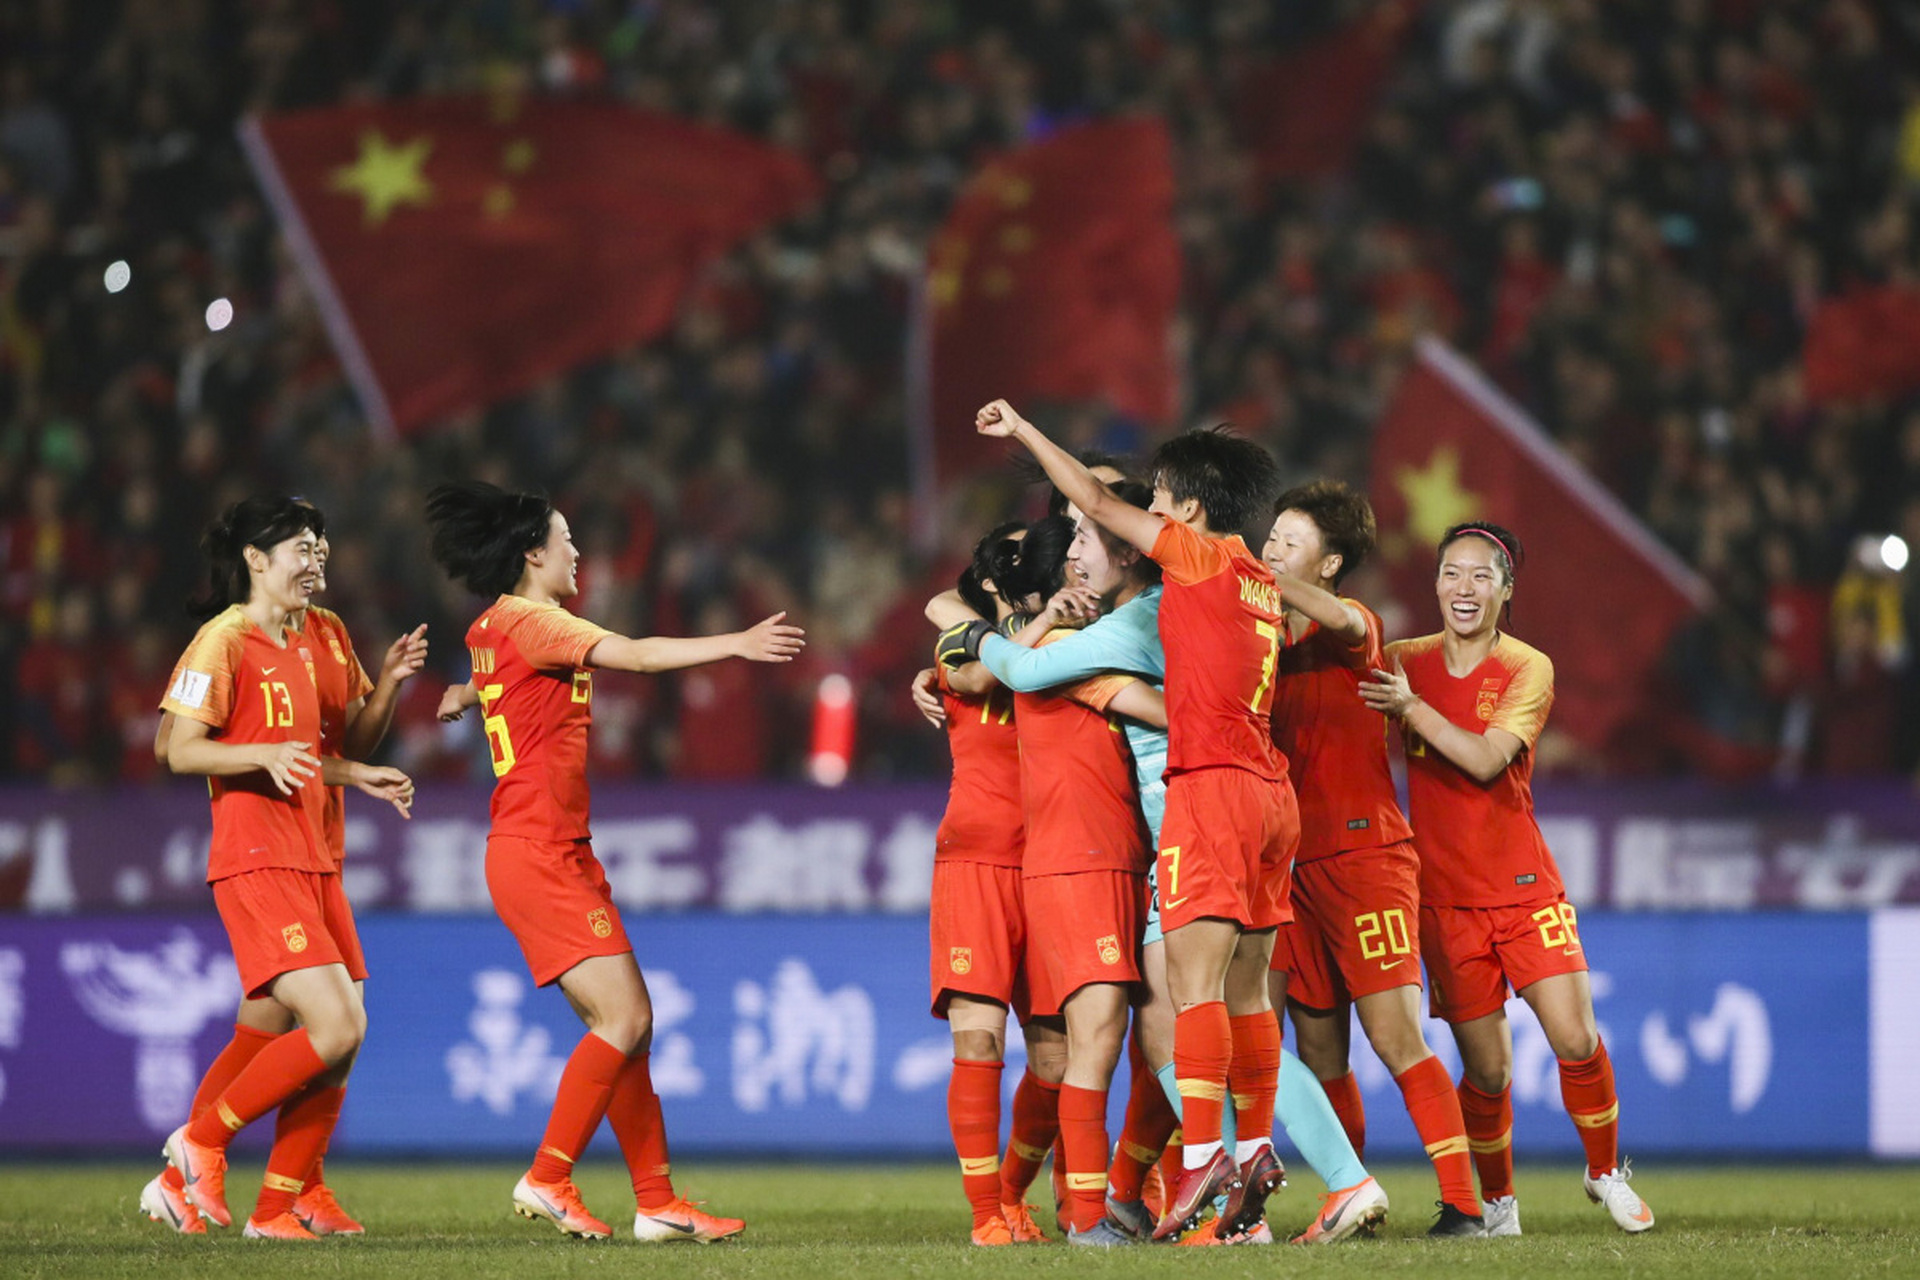 王霜冷静地罚进点球,将比分改写为1:0,为十人应战的中国女足带来了